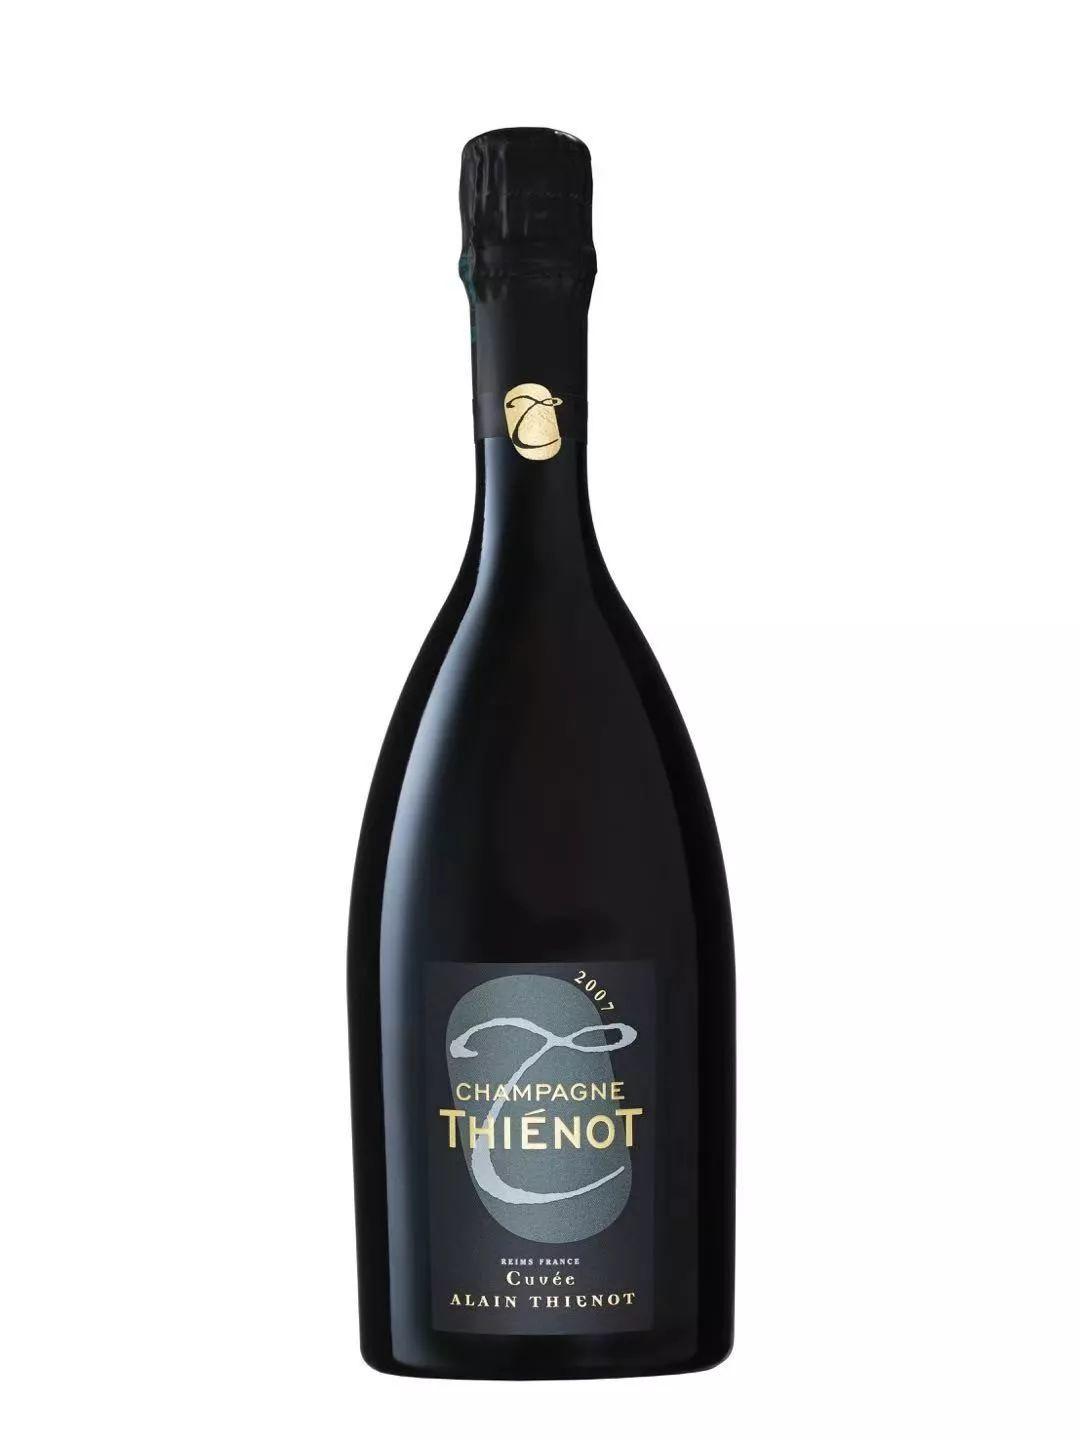 2019 展商介绍 | 帝龙香槟 Champagne Thiénot